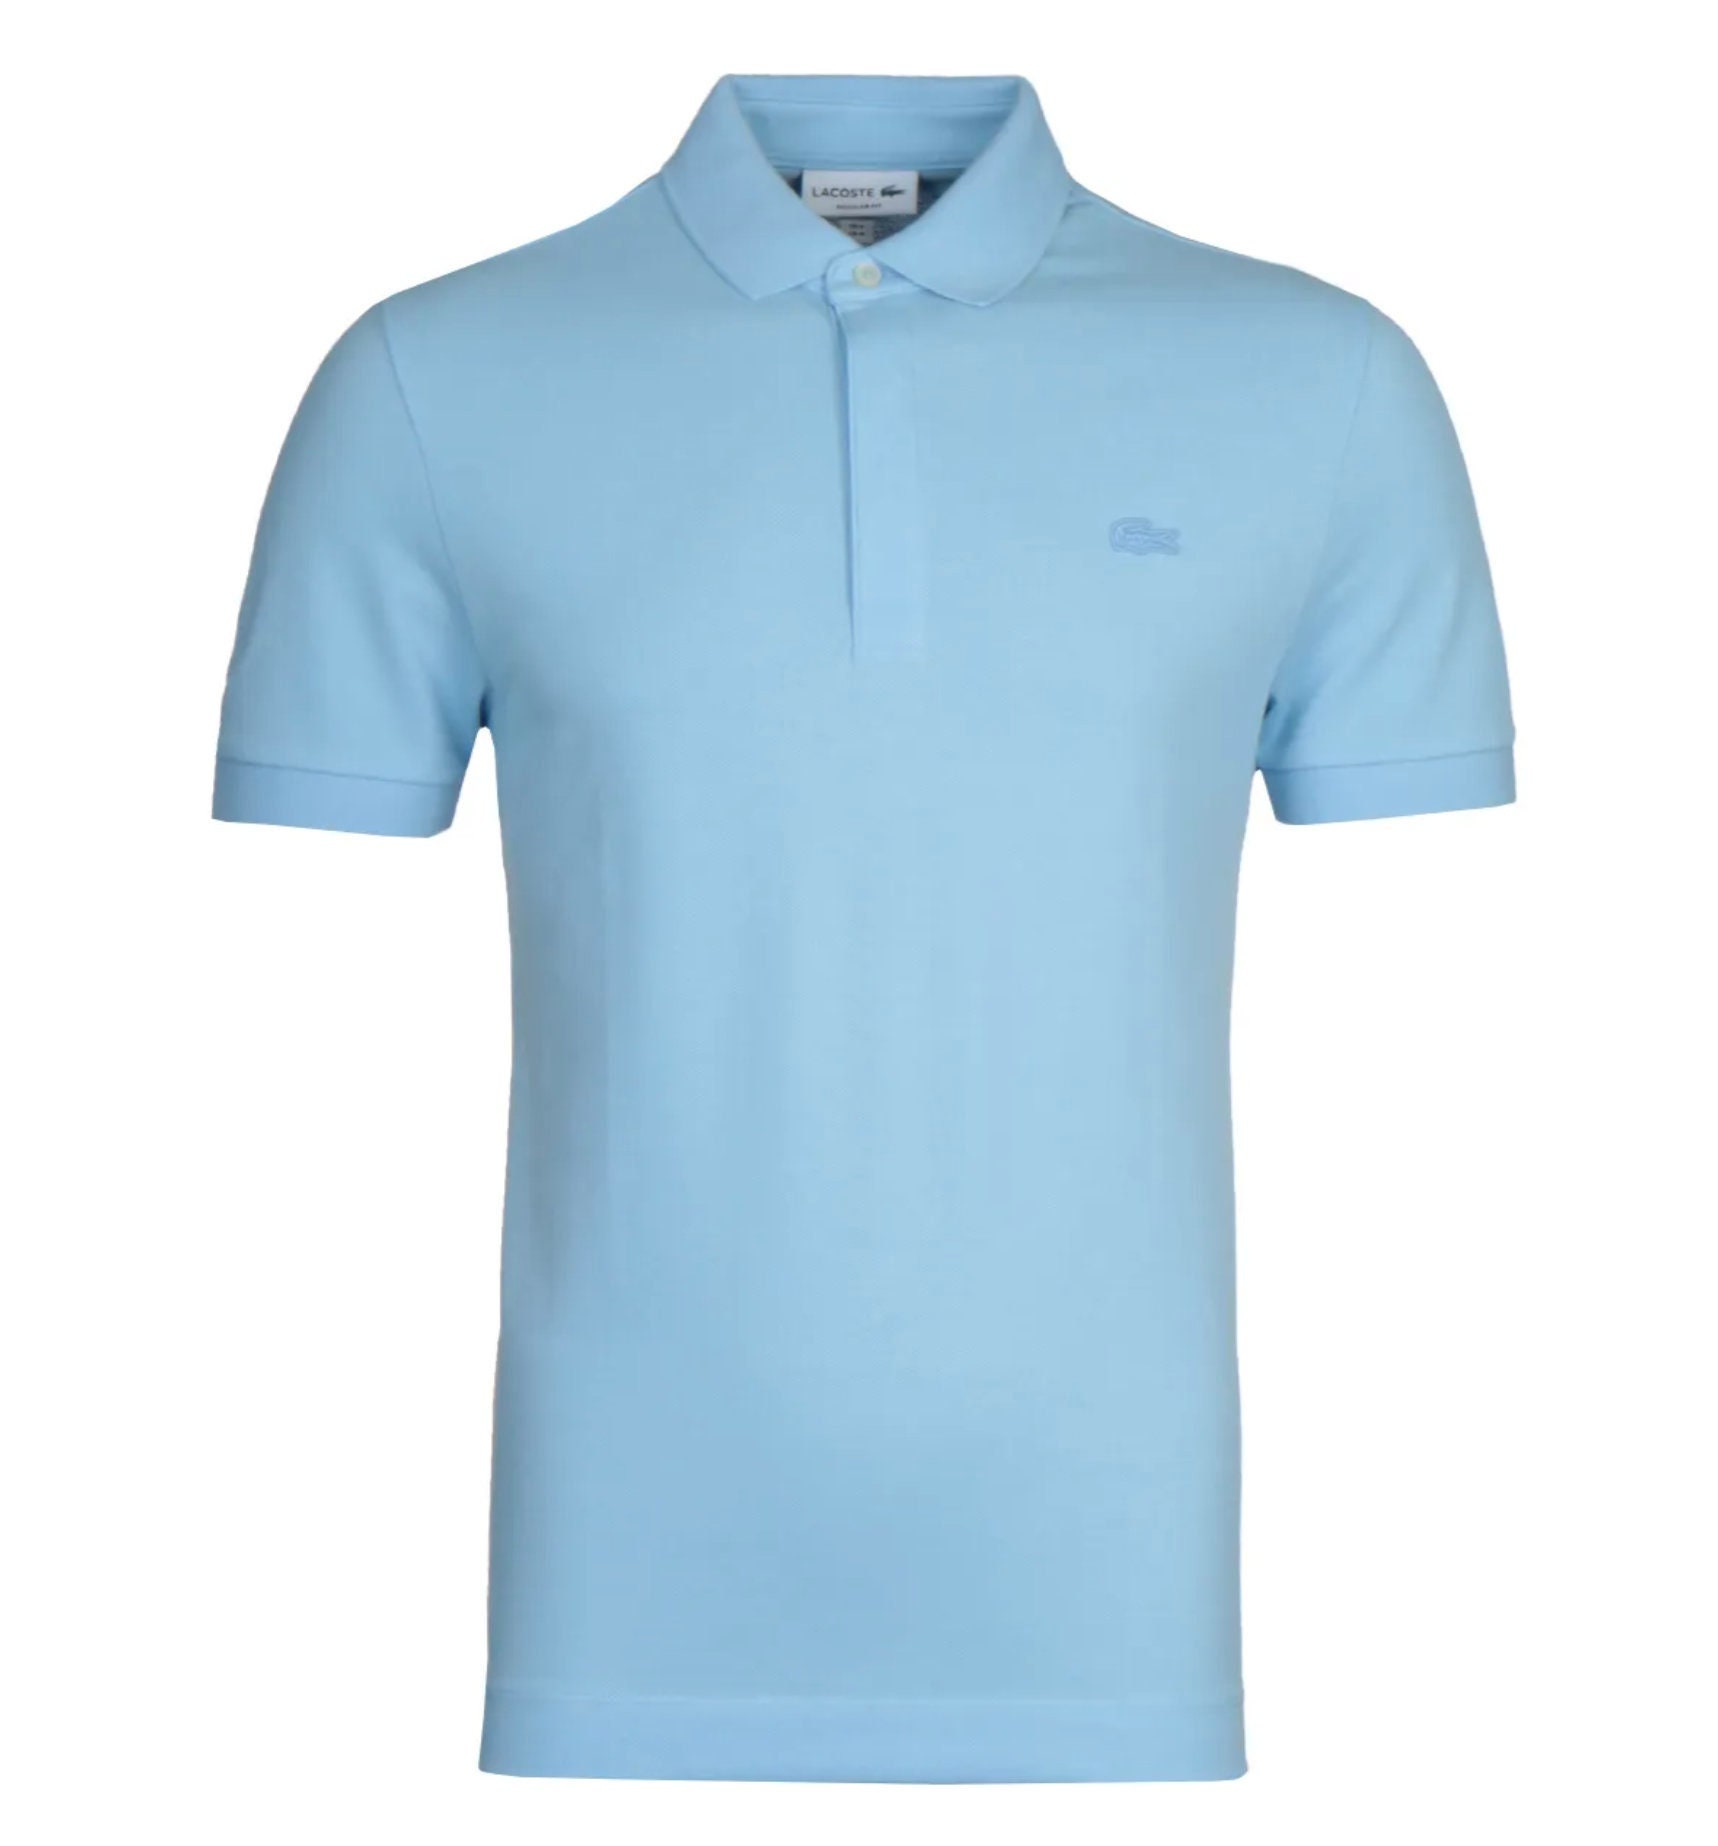 bladerdeeg sessie Bij Brand New Men's Lacoste Polo Shirt Light Blue only - Etsy